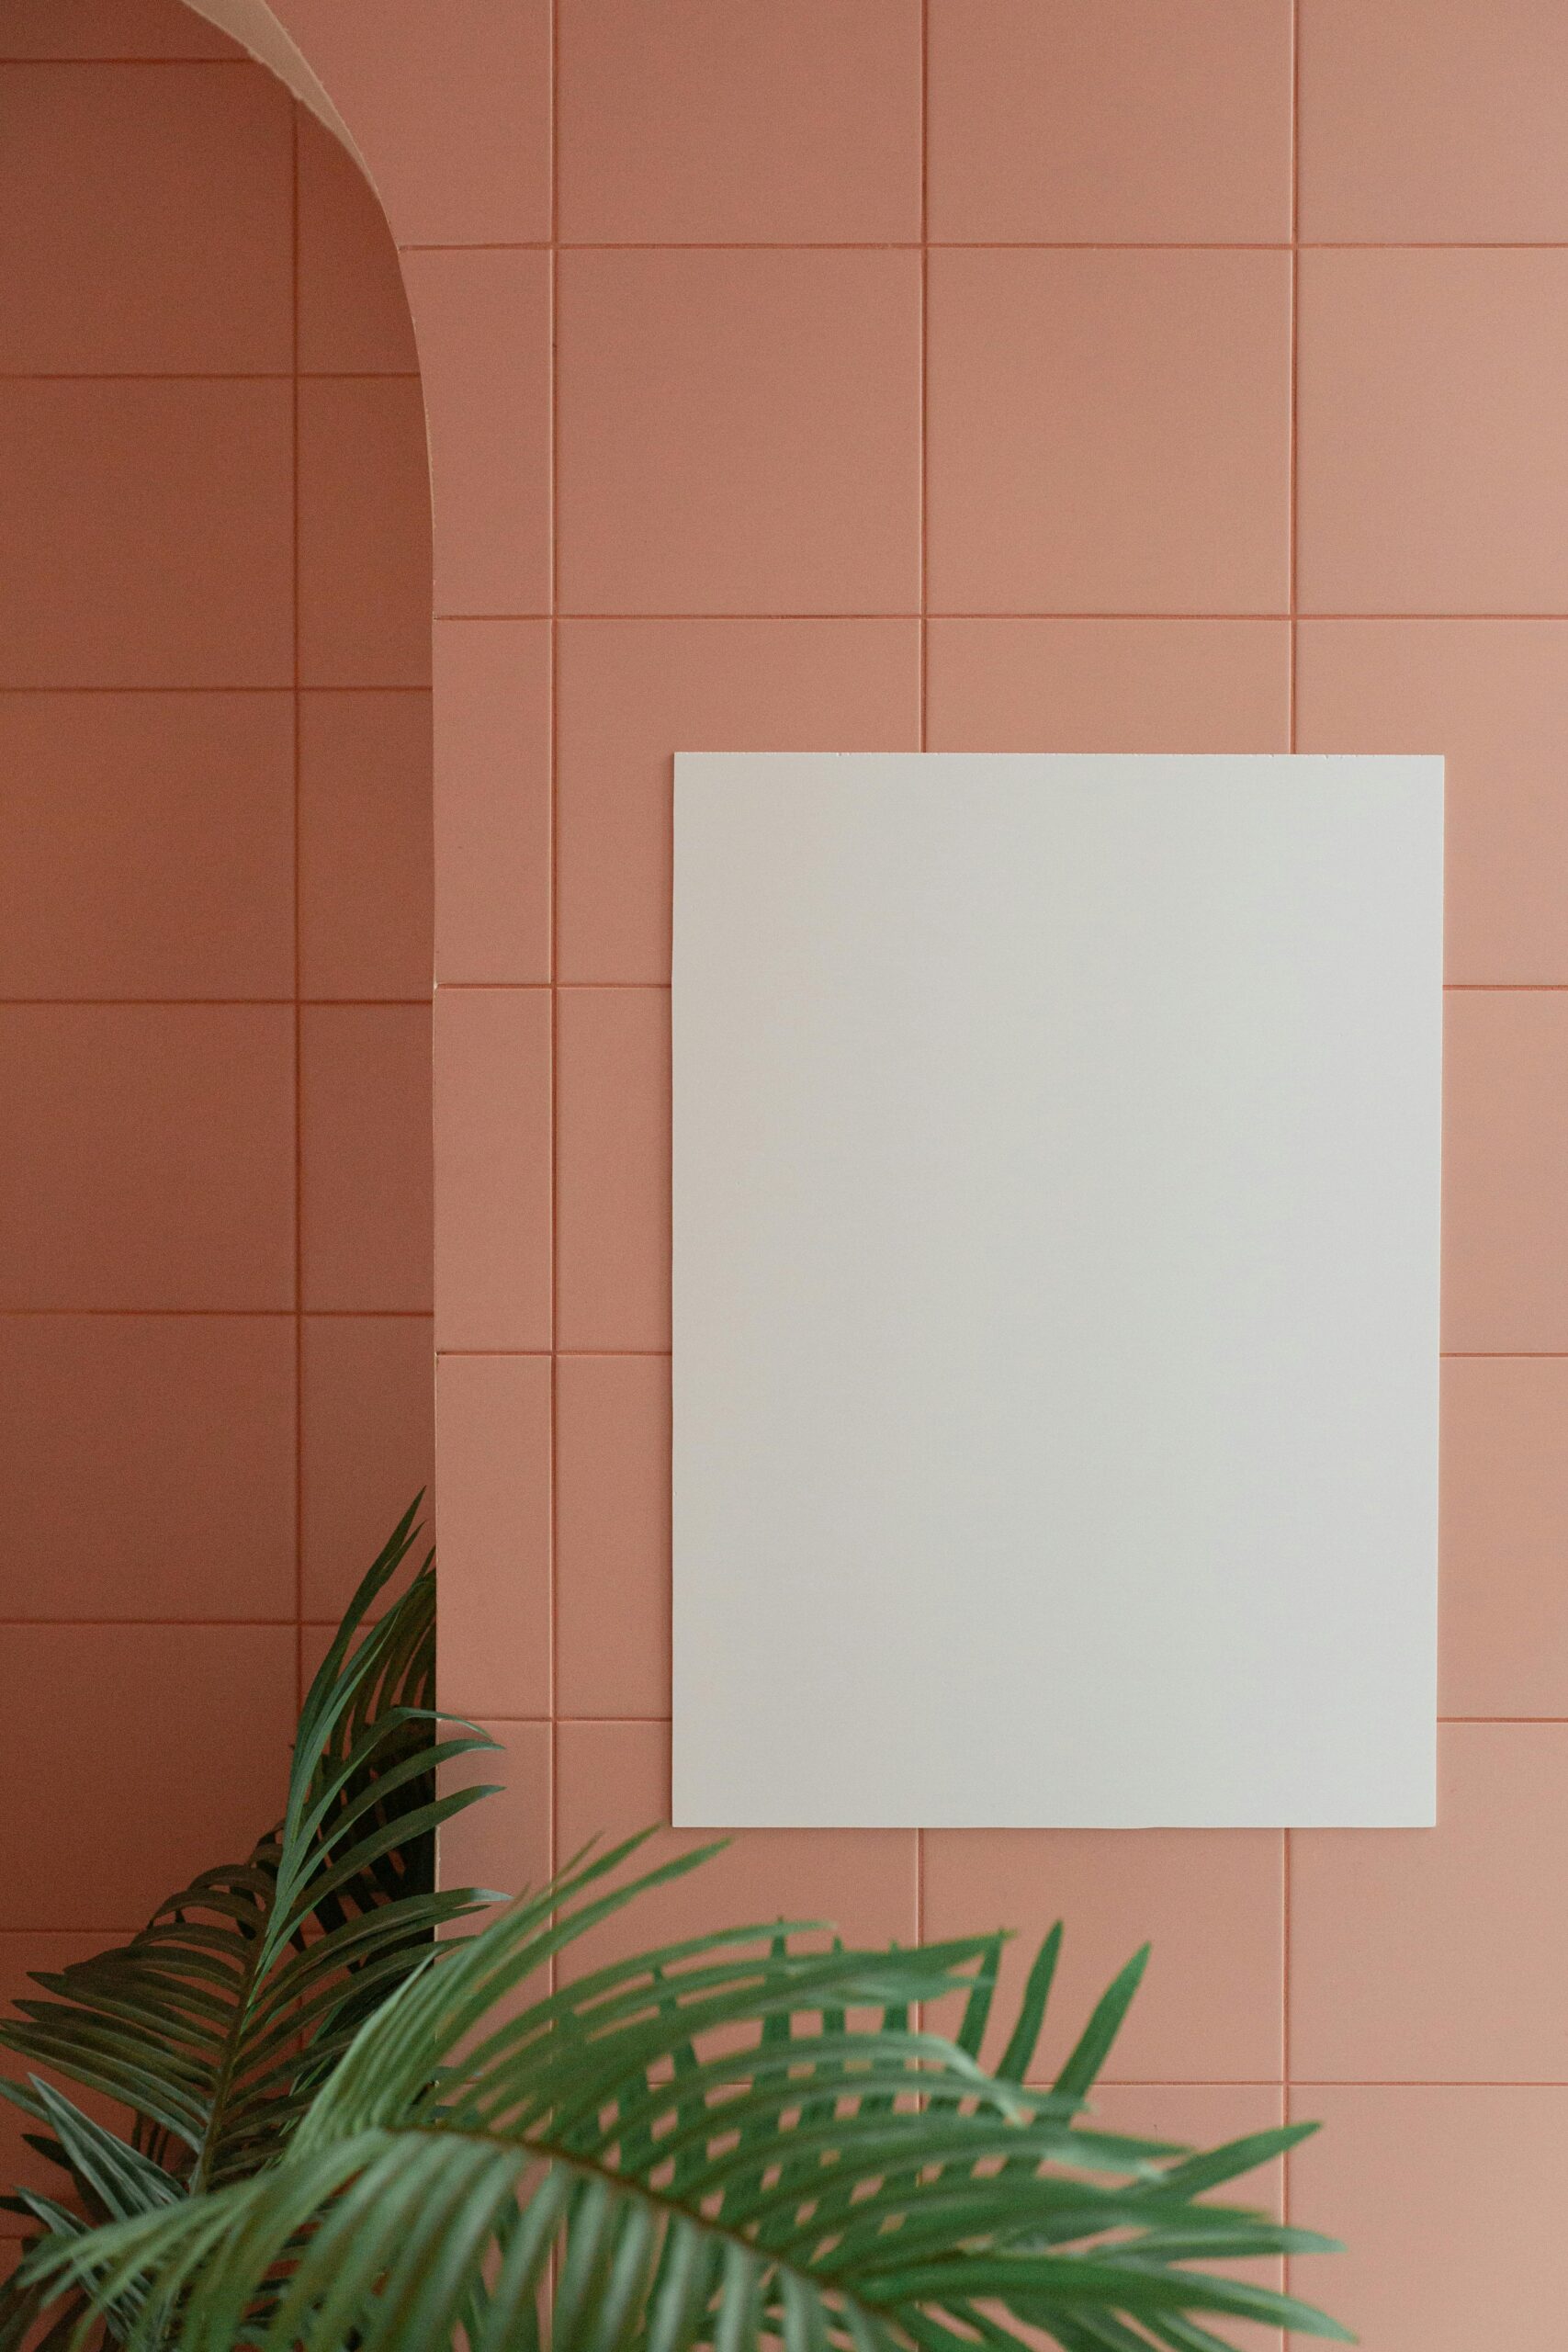 Moody Colors in a bathroom - Interior Design